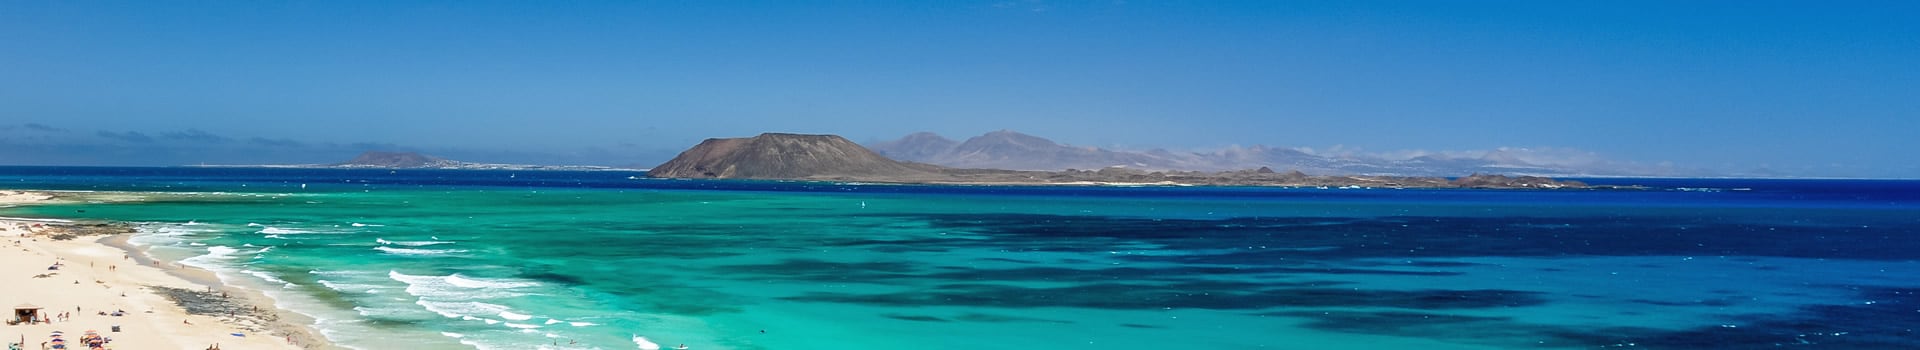 Billetes de Barco de Arrecife (Lanzarote) a Corralejo (Fuerteventura)